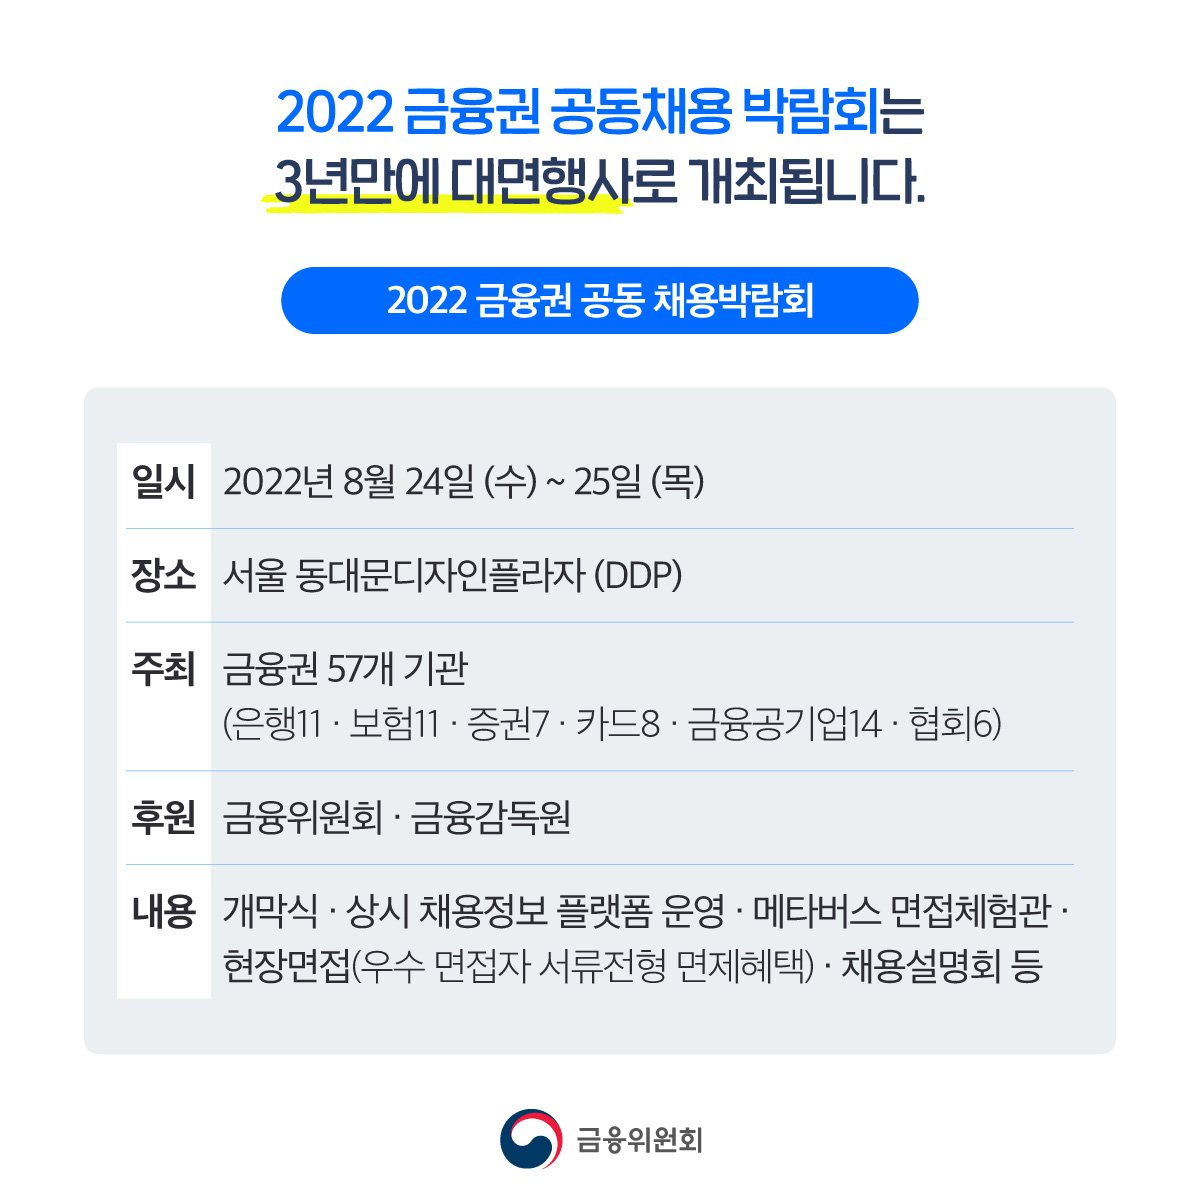 2022 금융권 공동채용 박람회 홈페이지 오픈